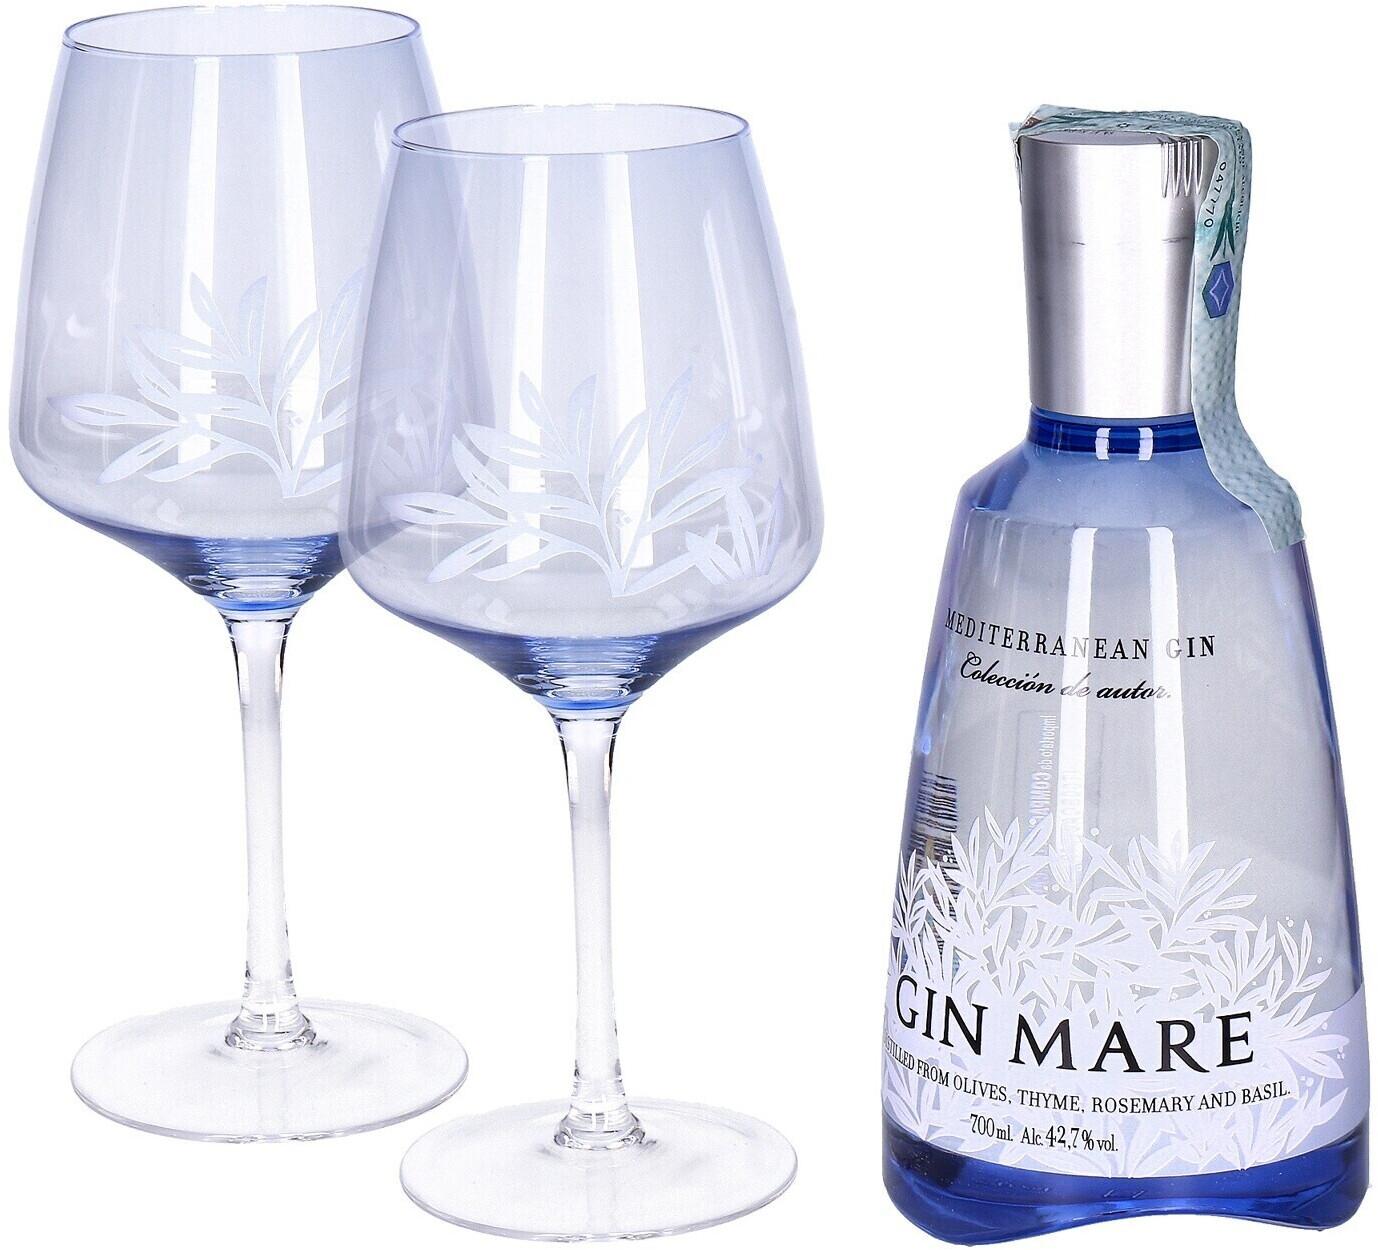 Gin Mare € 42,7% offerte 58,50 Migliori su (oggi) 0,7l + e prezzi a 2 Glasses | idealo